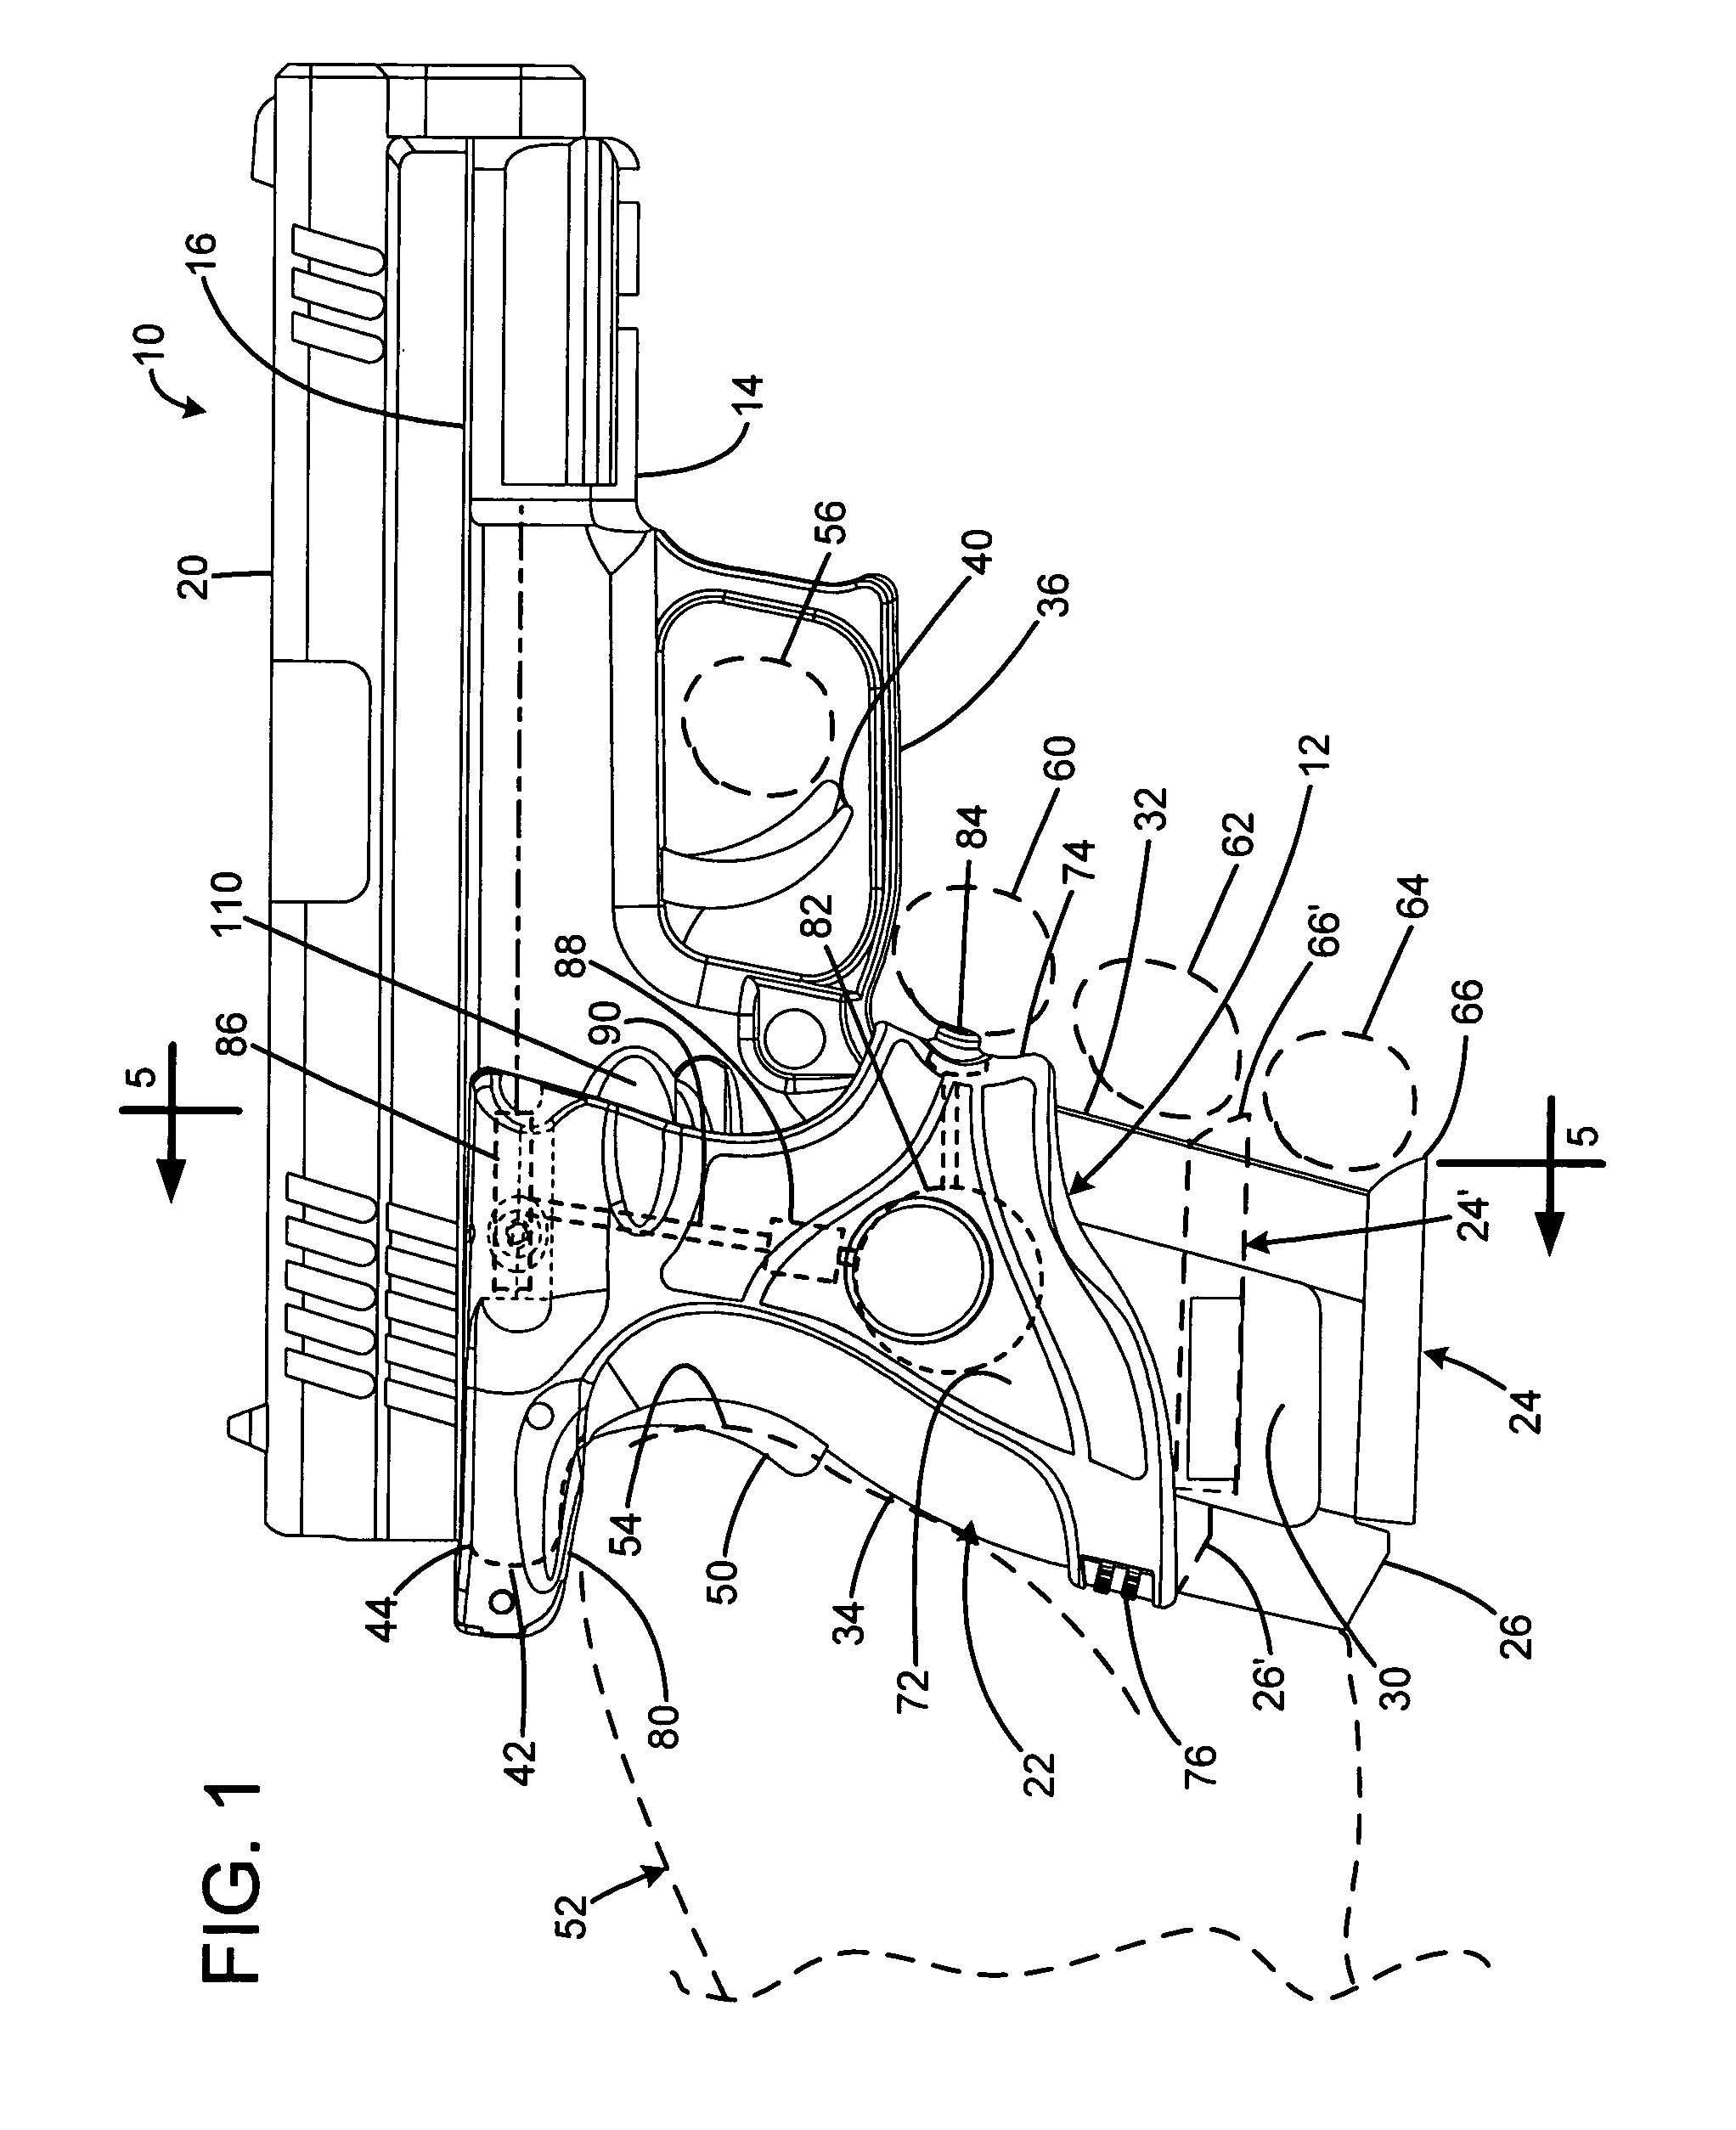 Laser gunsight system for a firearm handgrip